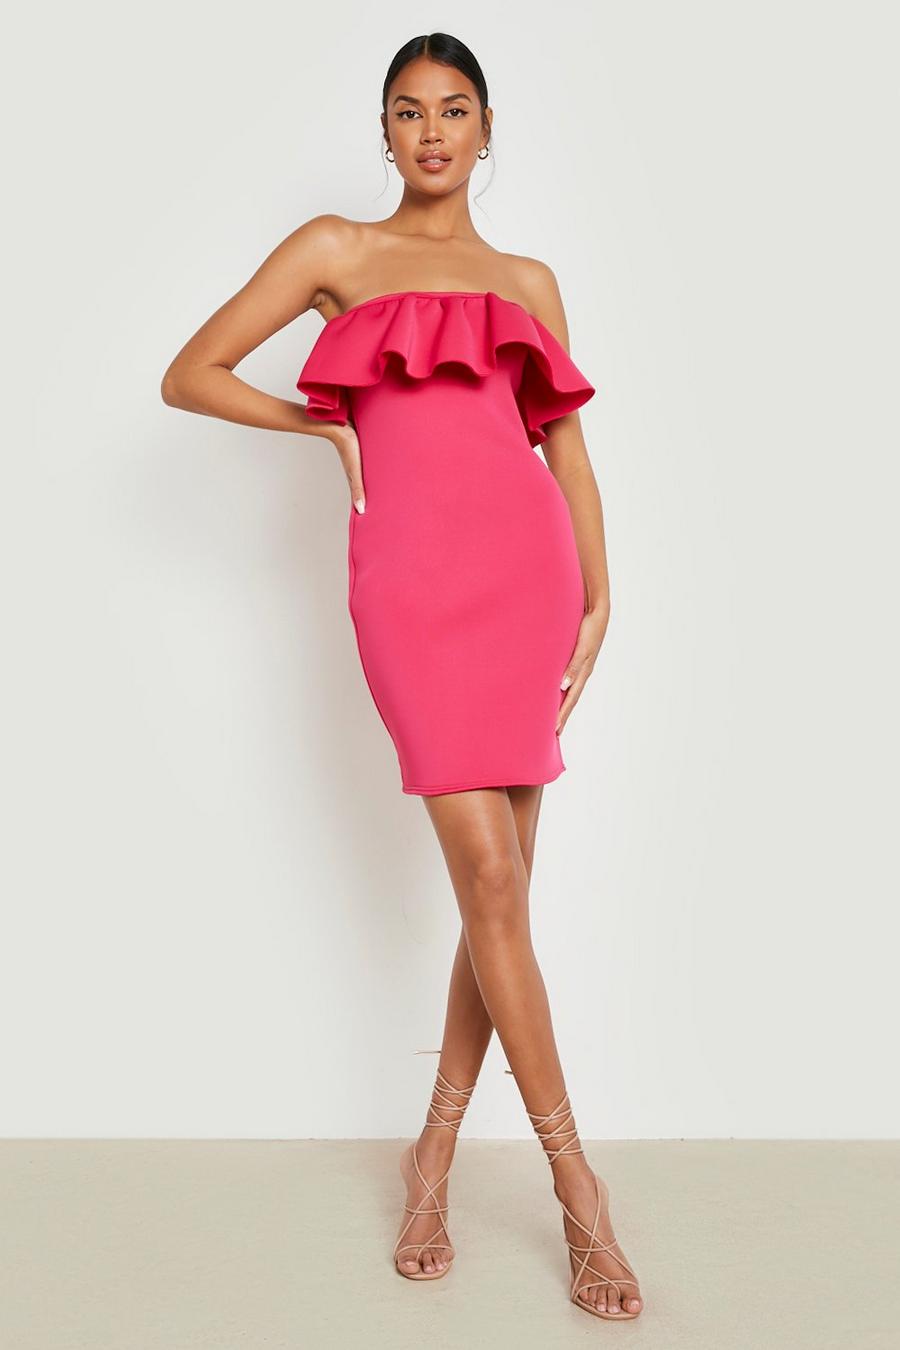 Bardot-Minikleid mit Rüschen, Hot pink